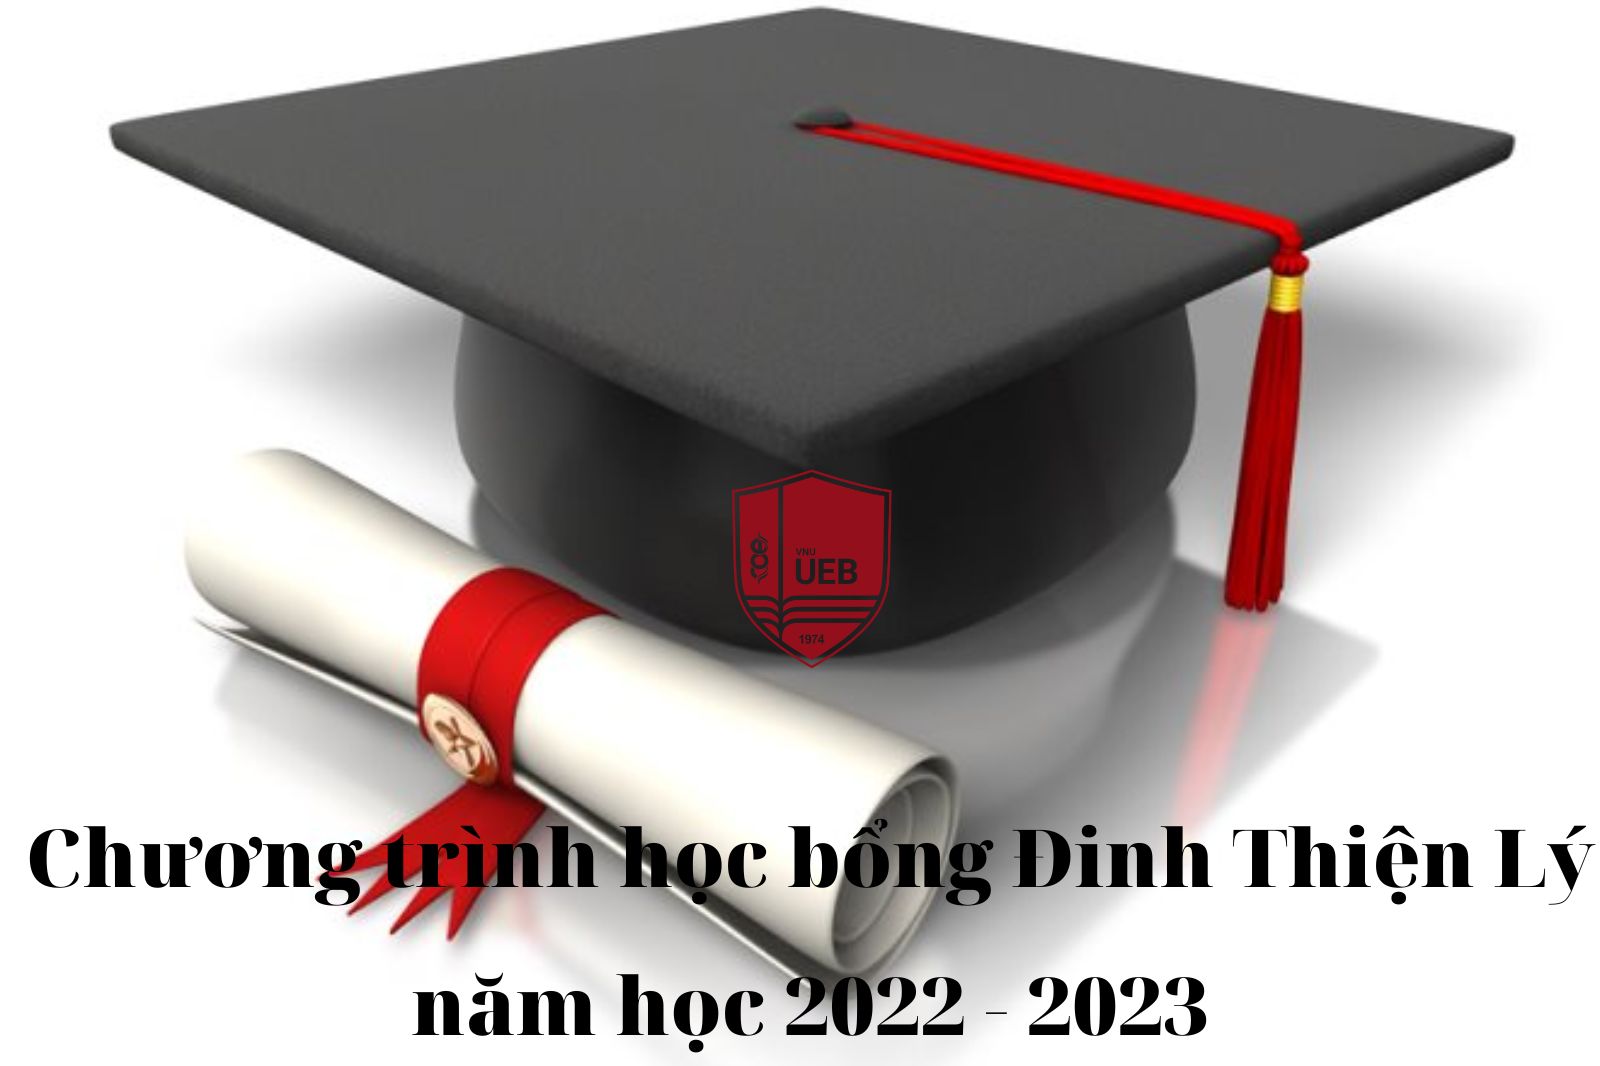  Chương trình học bổng Đinh Thiện Lý năm học 2022 - 2023